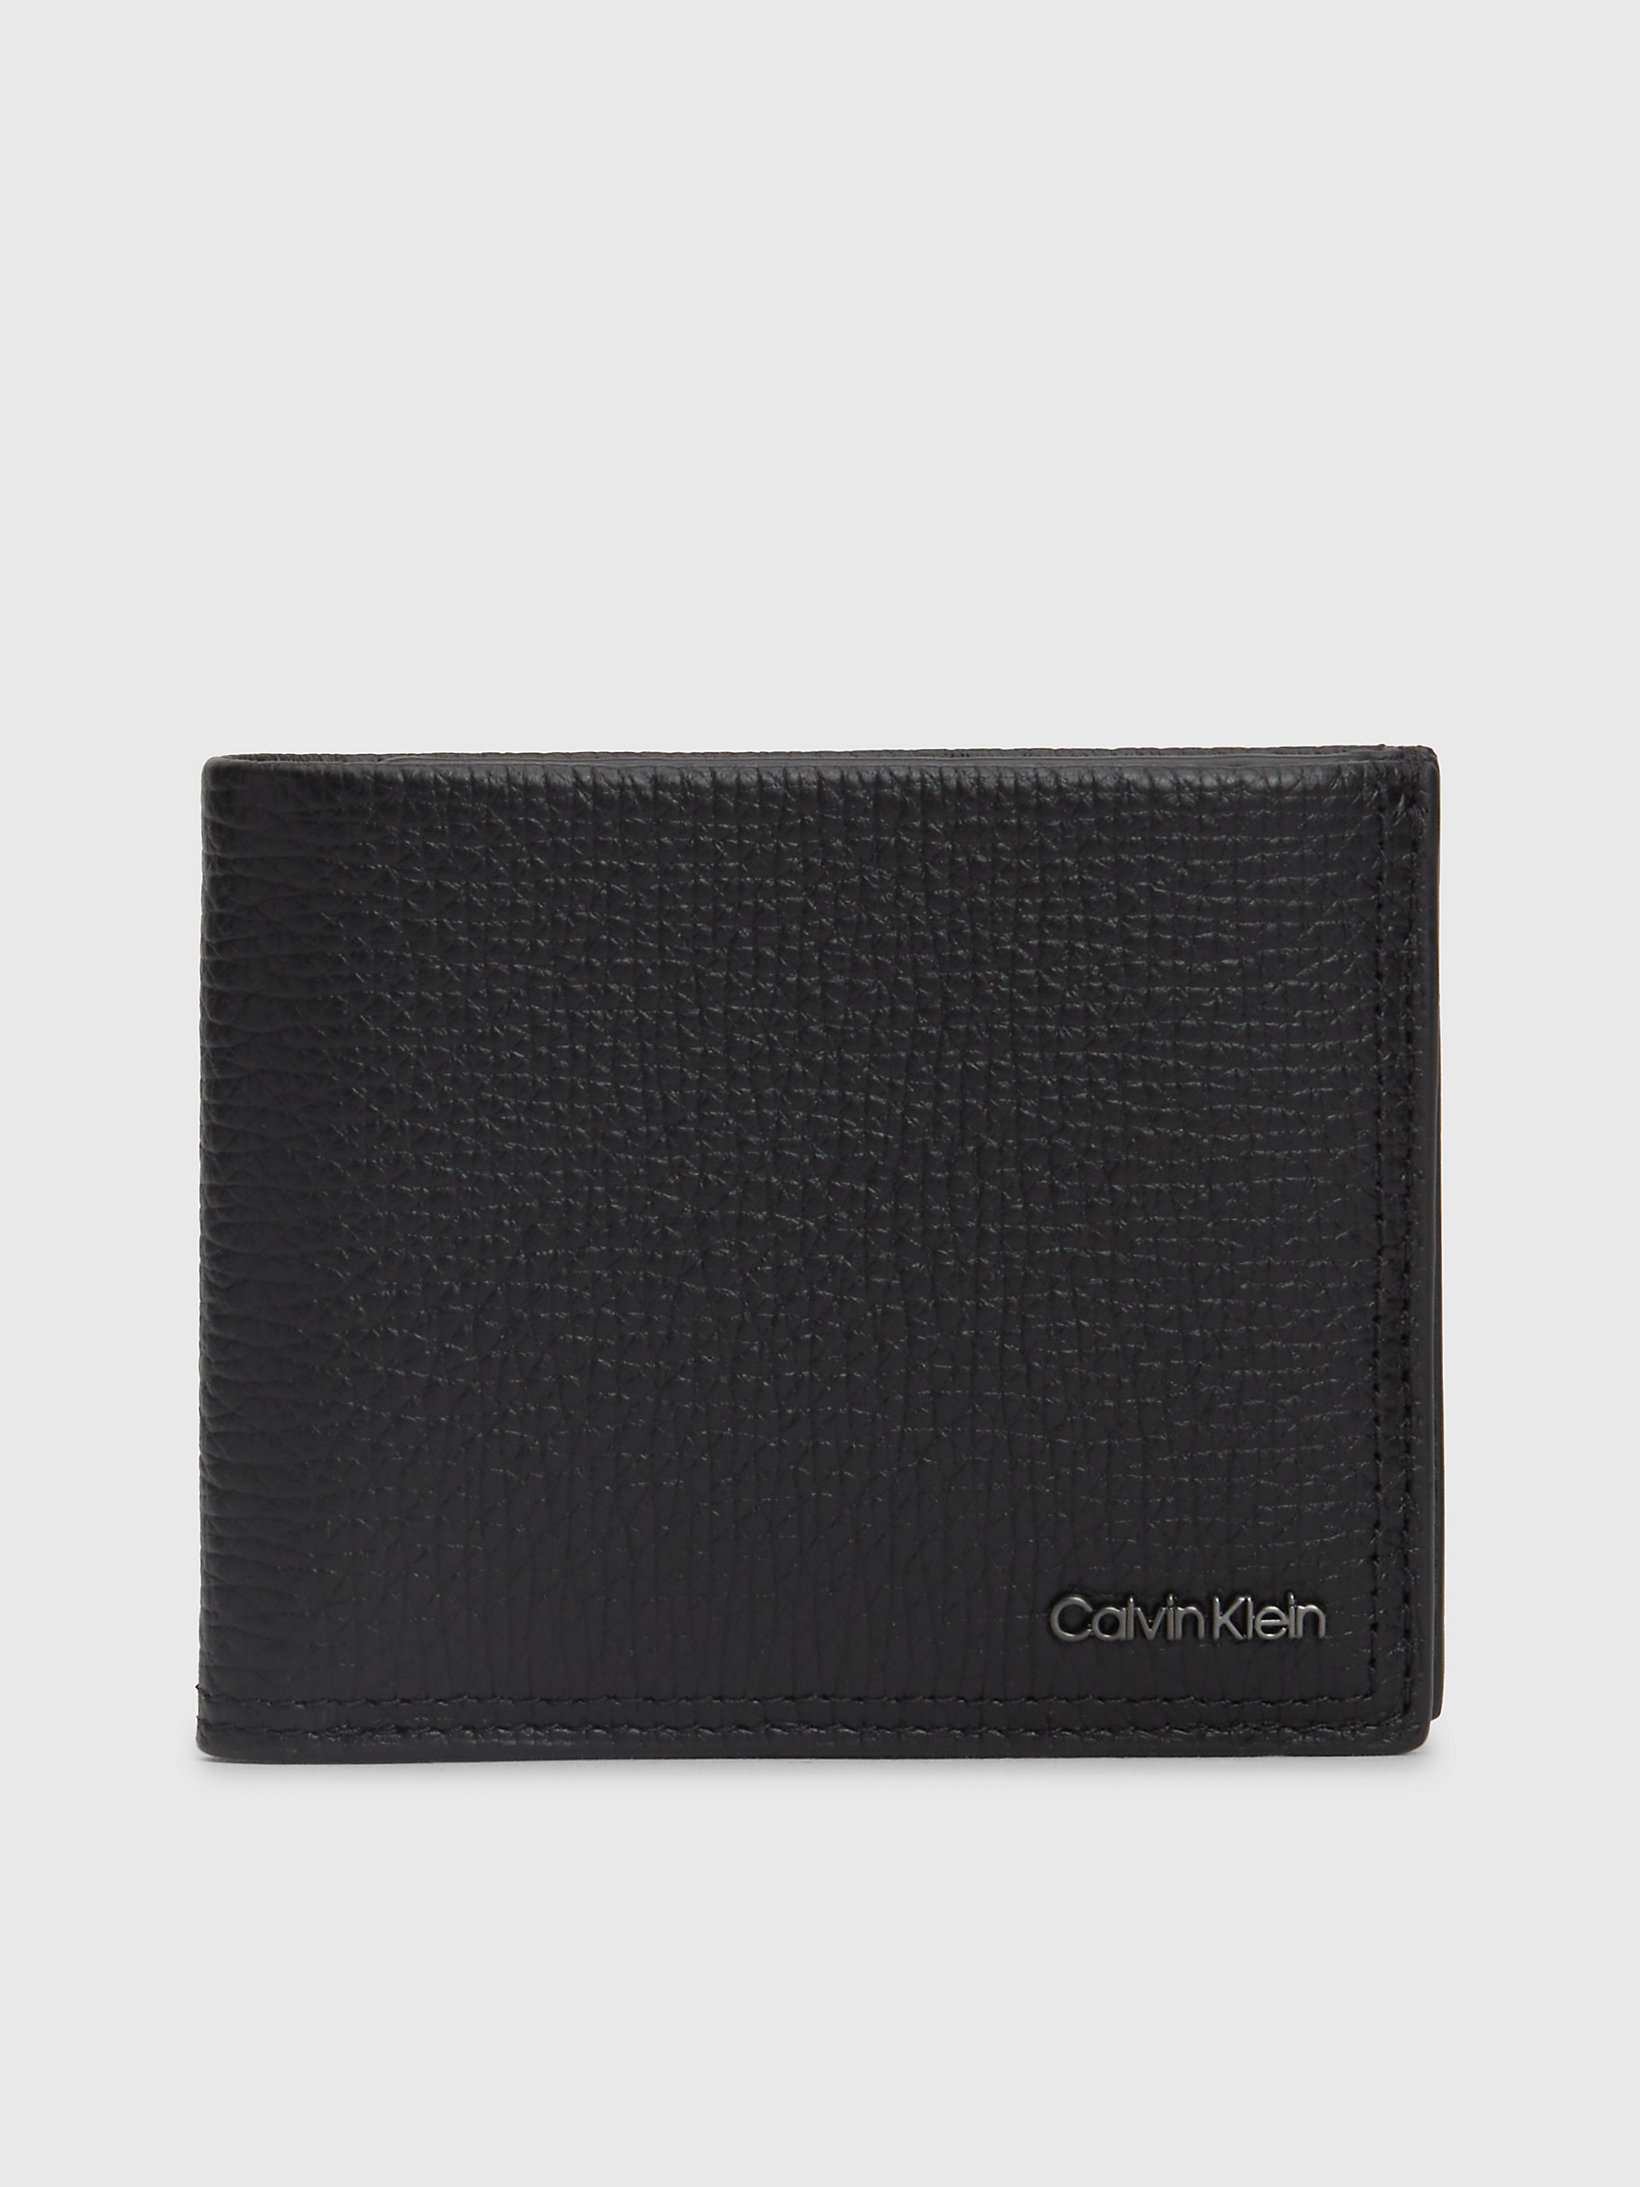 CK Black Leather Billfold Wallet undefined men Calvin Klein